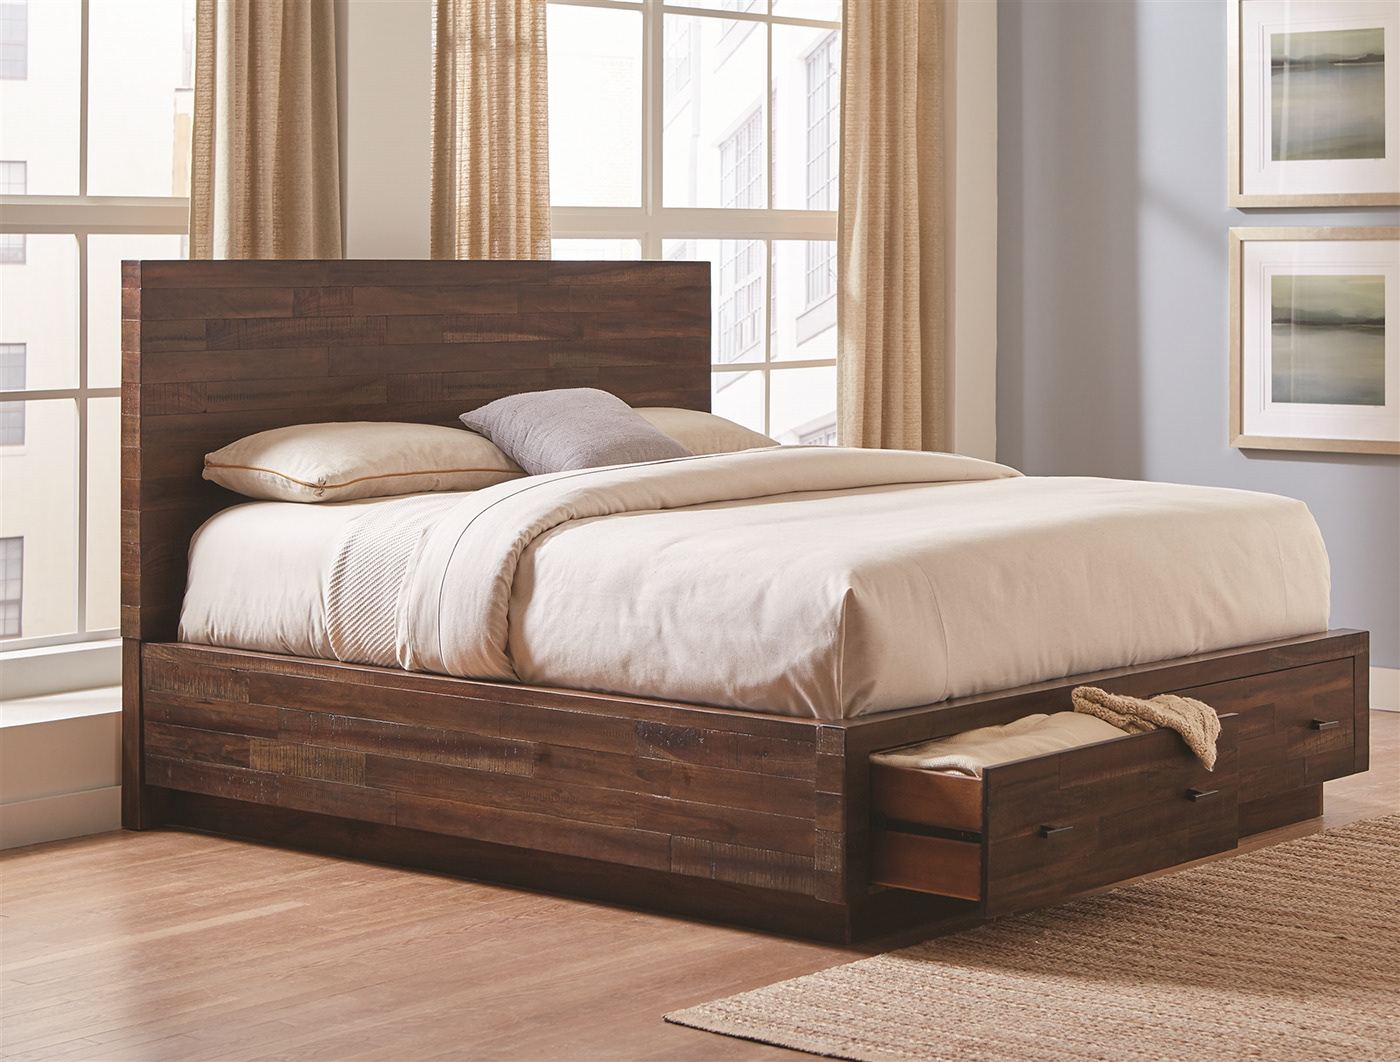 Giường gỗ lim với thiết kế tích hợp cả ngăn tủ bên dưới để đựng đồ